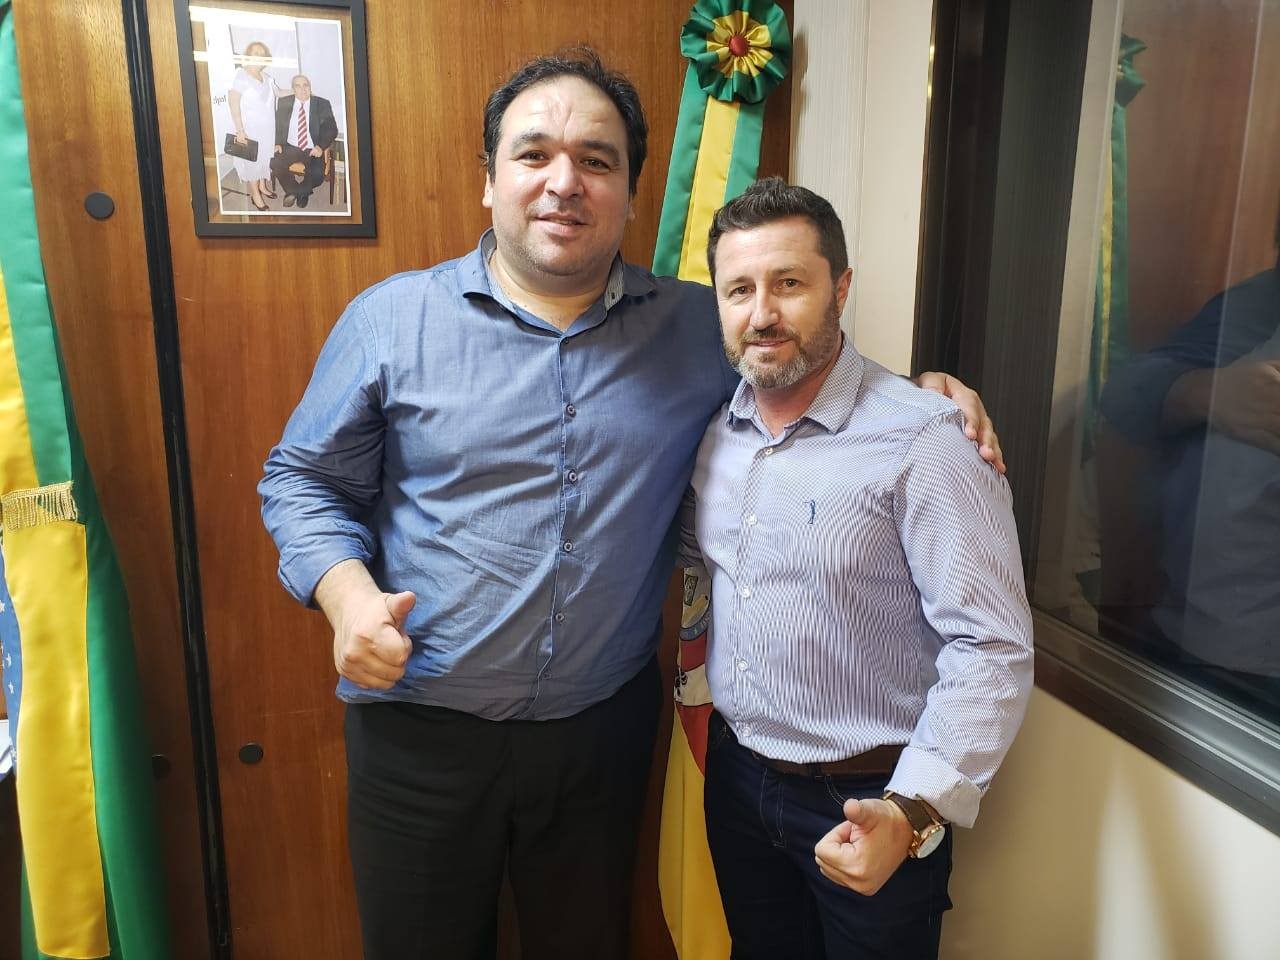 Recebi o Vereador Marcio Zanetti da cidade de Morro Redondo nos relatando as dificuldades no atendimento especializado e nas cirurgias eletivas da região.